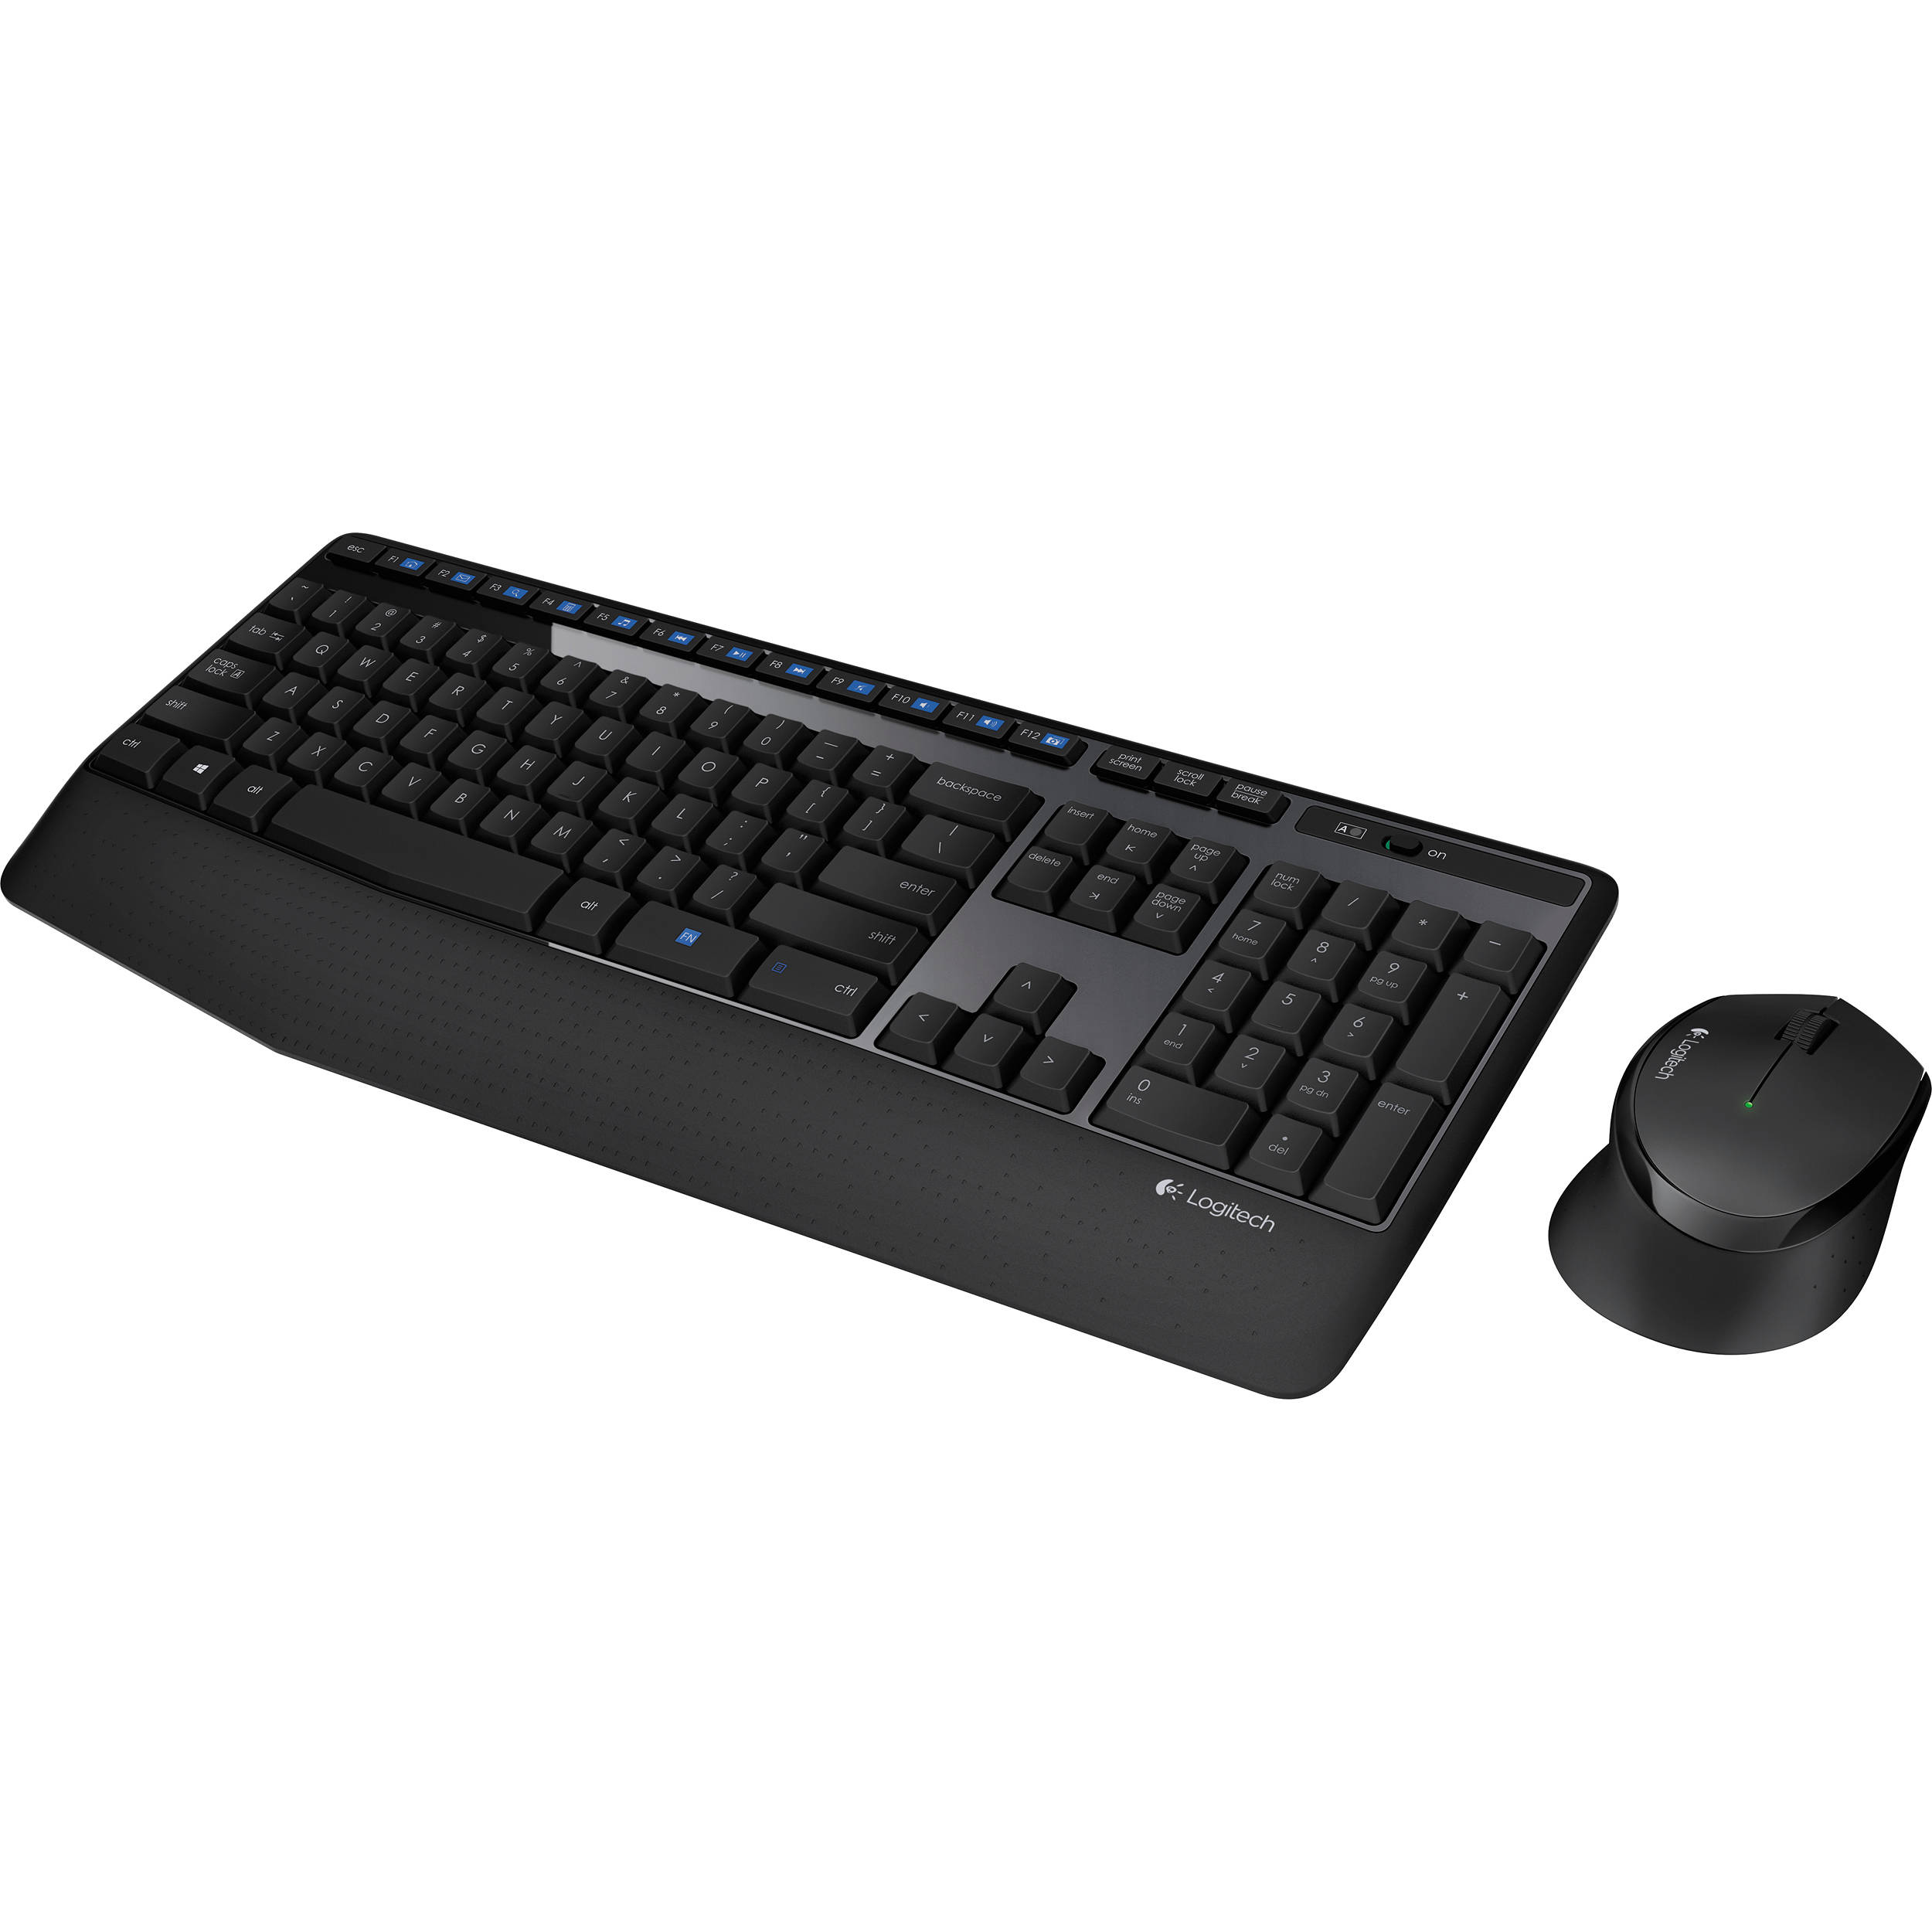 Logitech Mk345 Wireless Keyboard and Mouse Combo (920-006481)